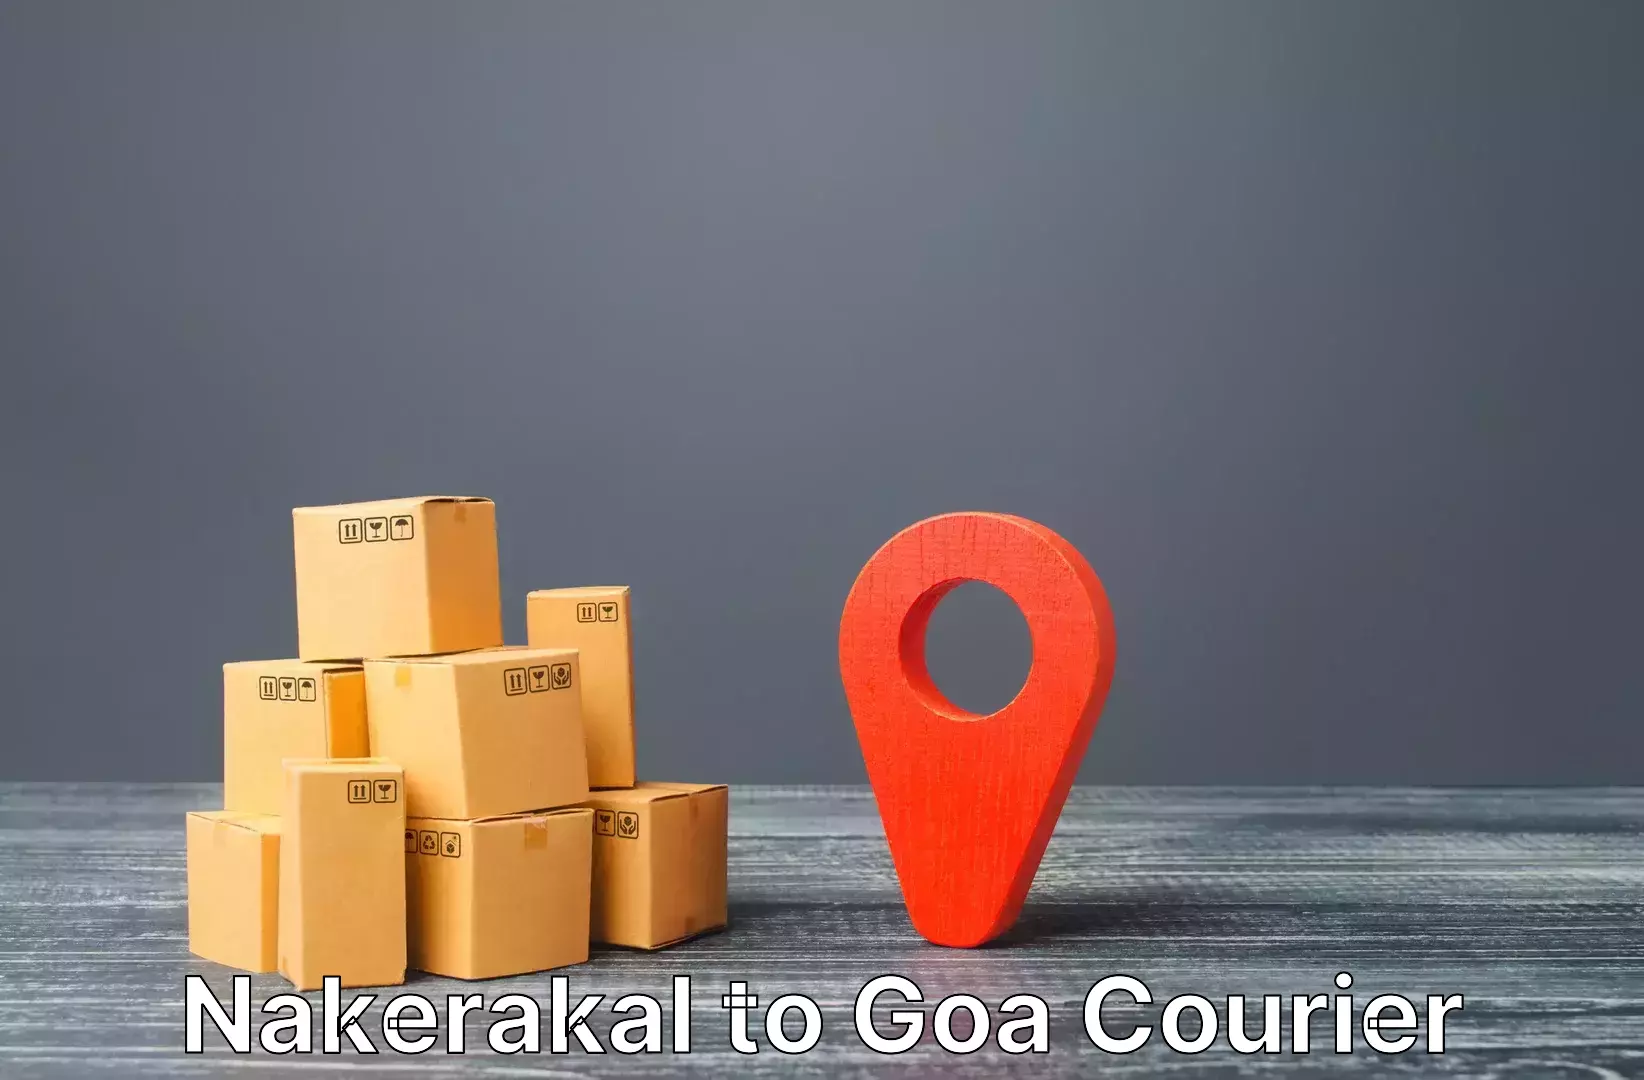 Baggage delivery optimization Nakerakal to Goa University